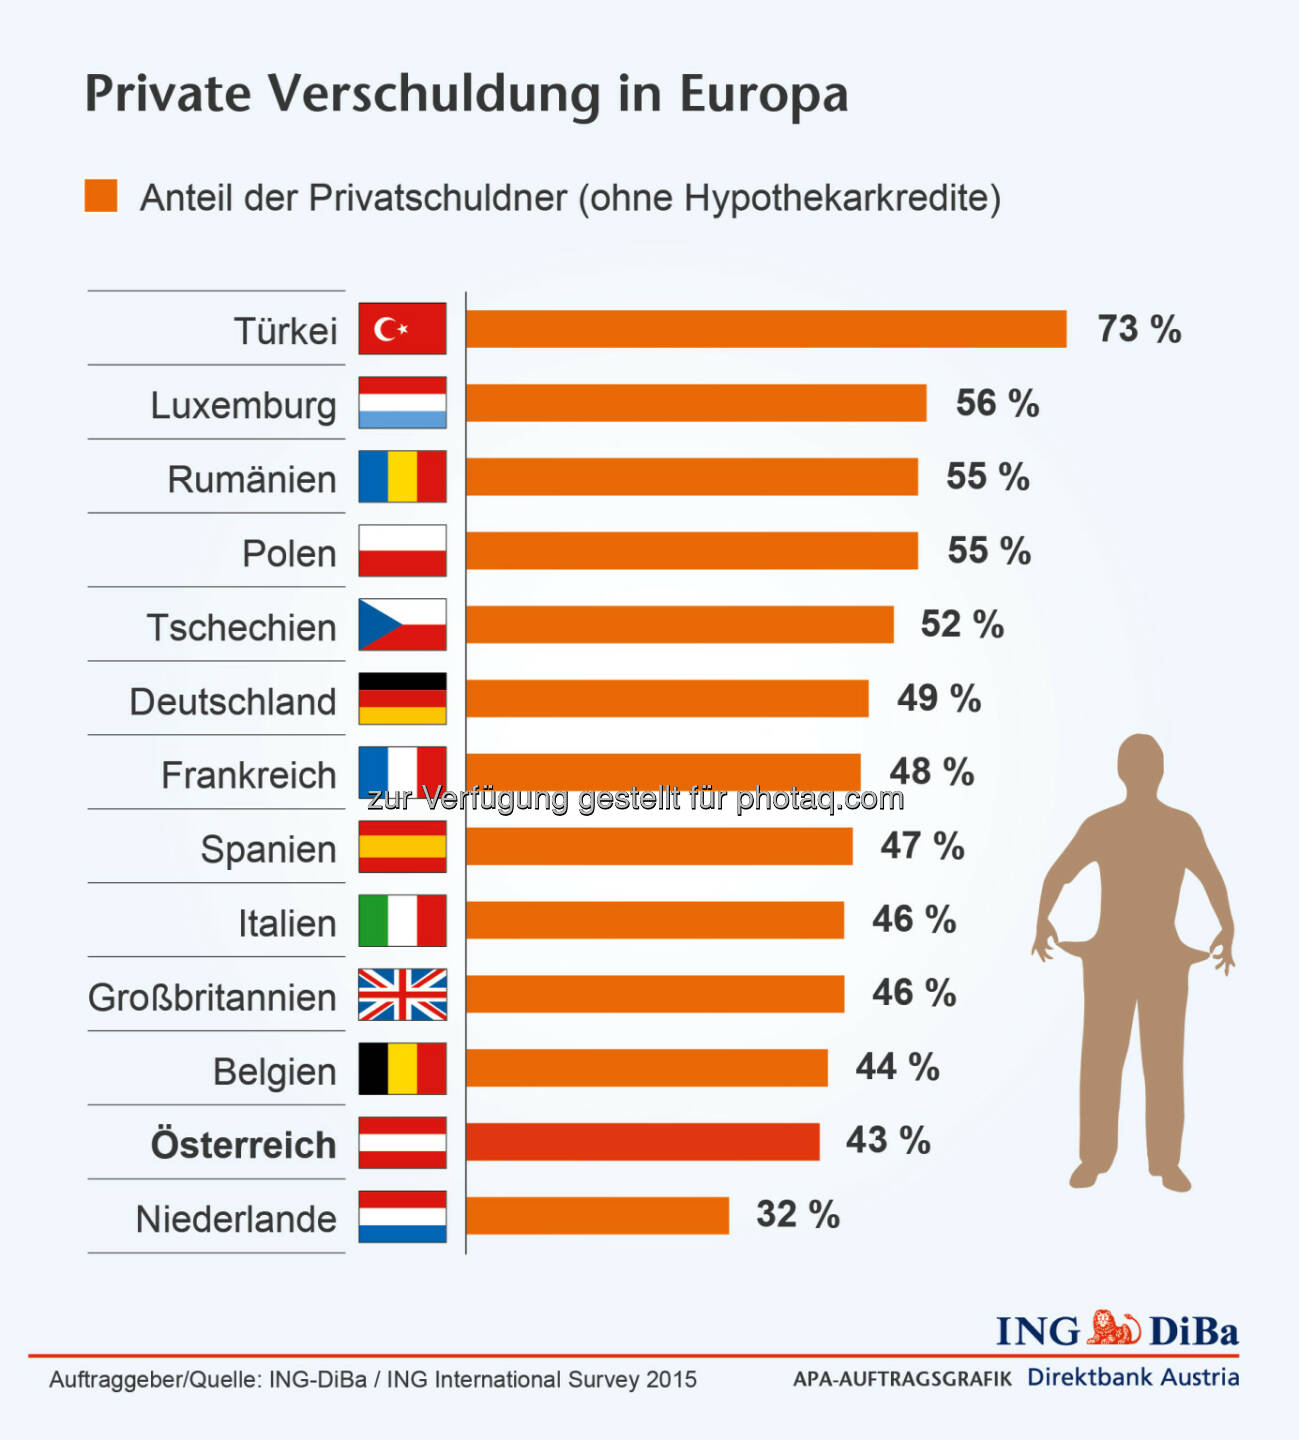 Private Verschuldung in Europa - Türkei am schlechtesten, Niederlande, Österreich am besten (Grafik: ING-DiBa) 